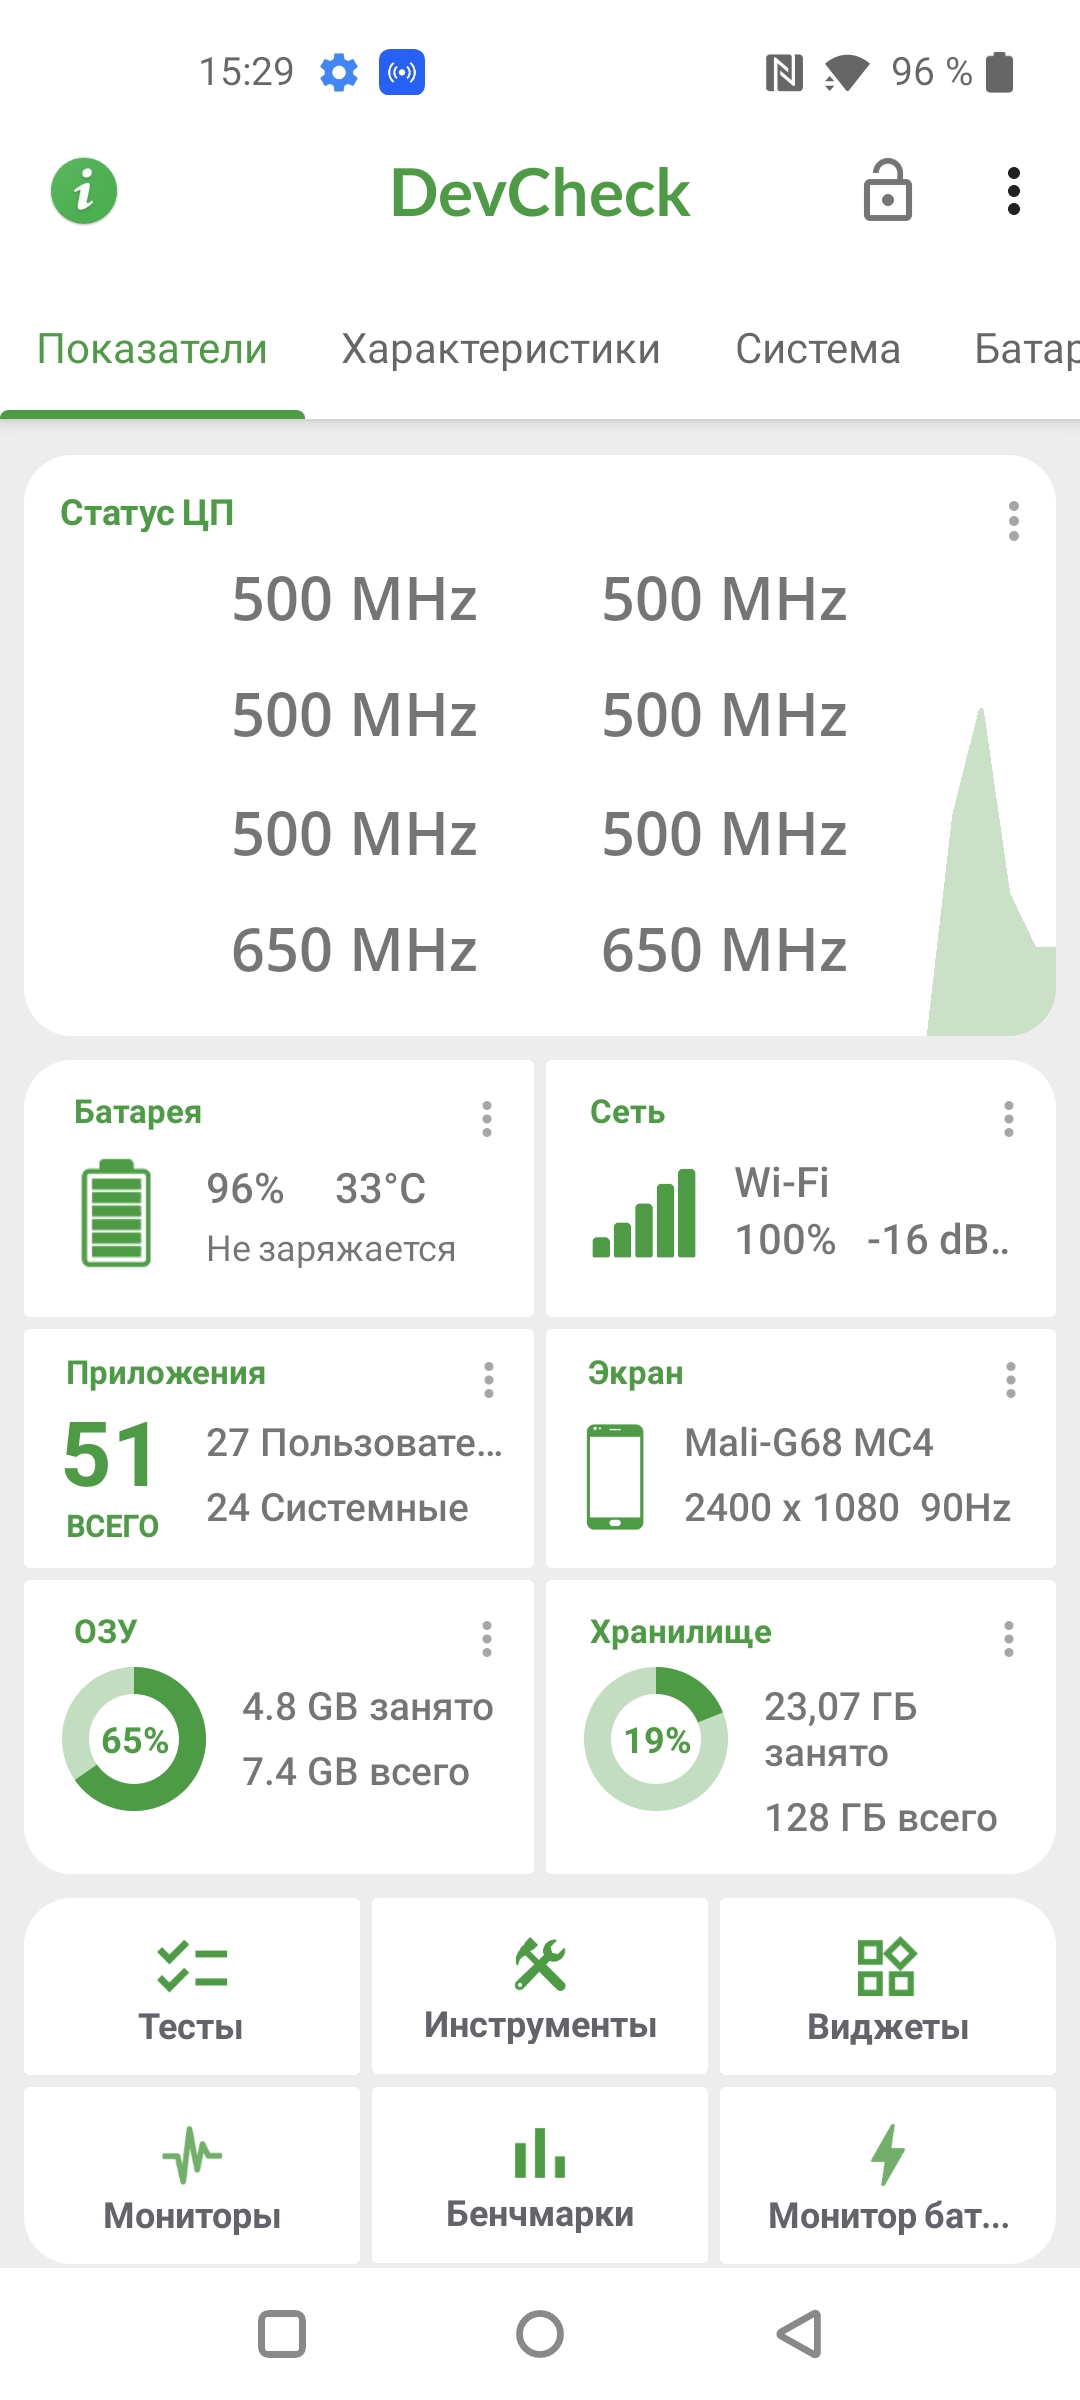 Oneplus Nord CE 2 5G recension: en välfylld smartphone för 305 dollar-85